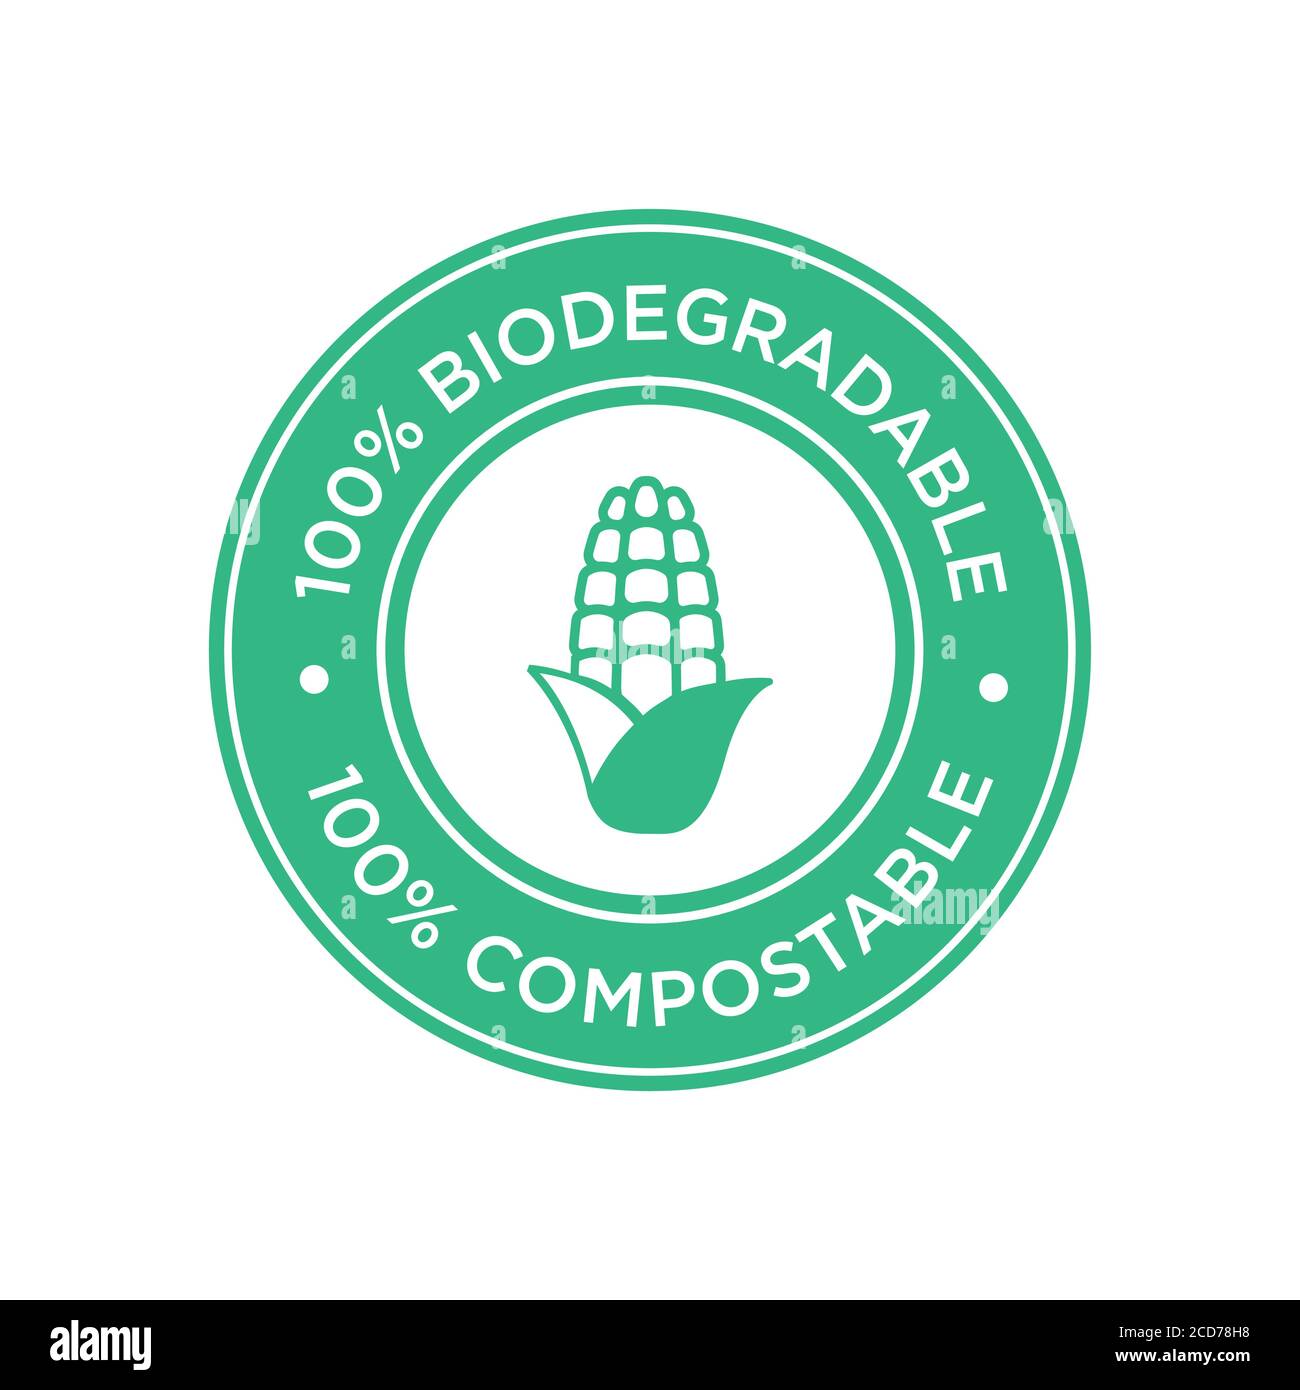 100% biologisch abbaubar und kompostierbar Icon. Biokunststoff aus Mais. Rundes und grünes Symbol. Stock Vektor